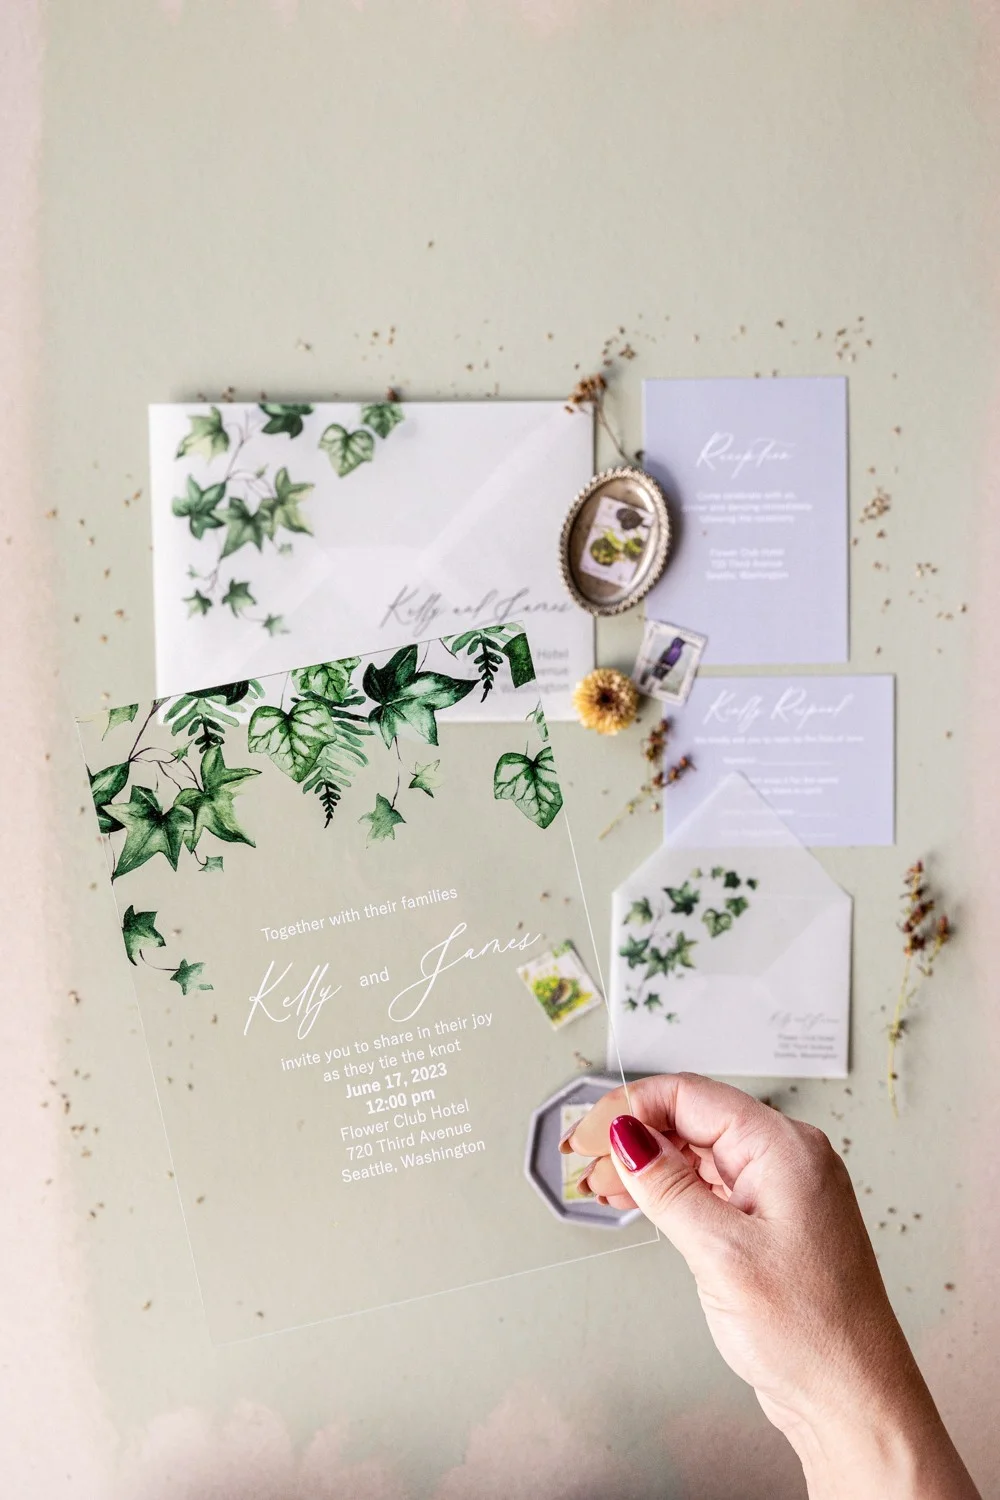 Partecipazione di nozze botanica in acrilico con edera, invito di nozze verde trasparente in plexi o vetro